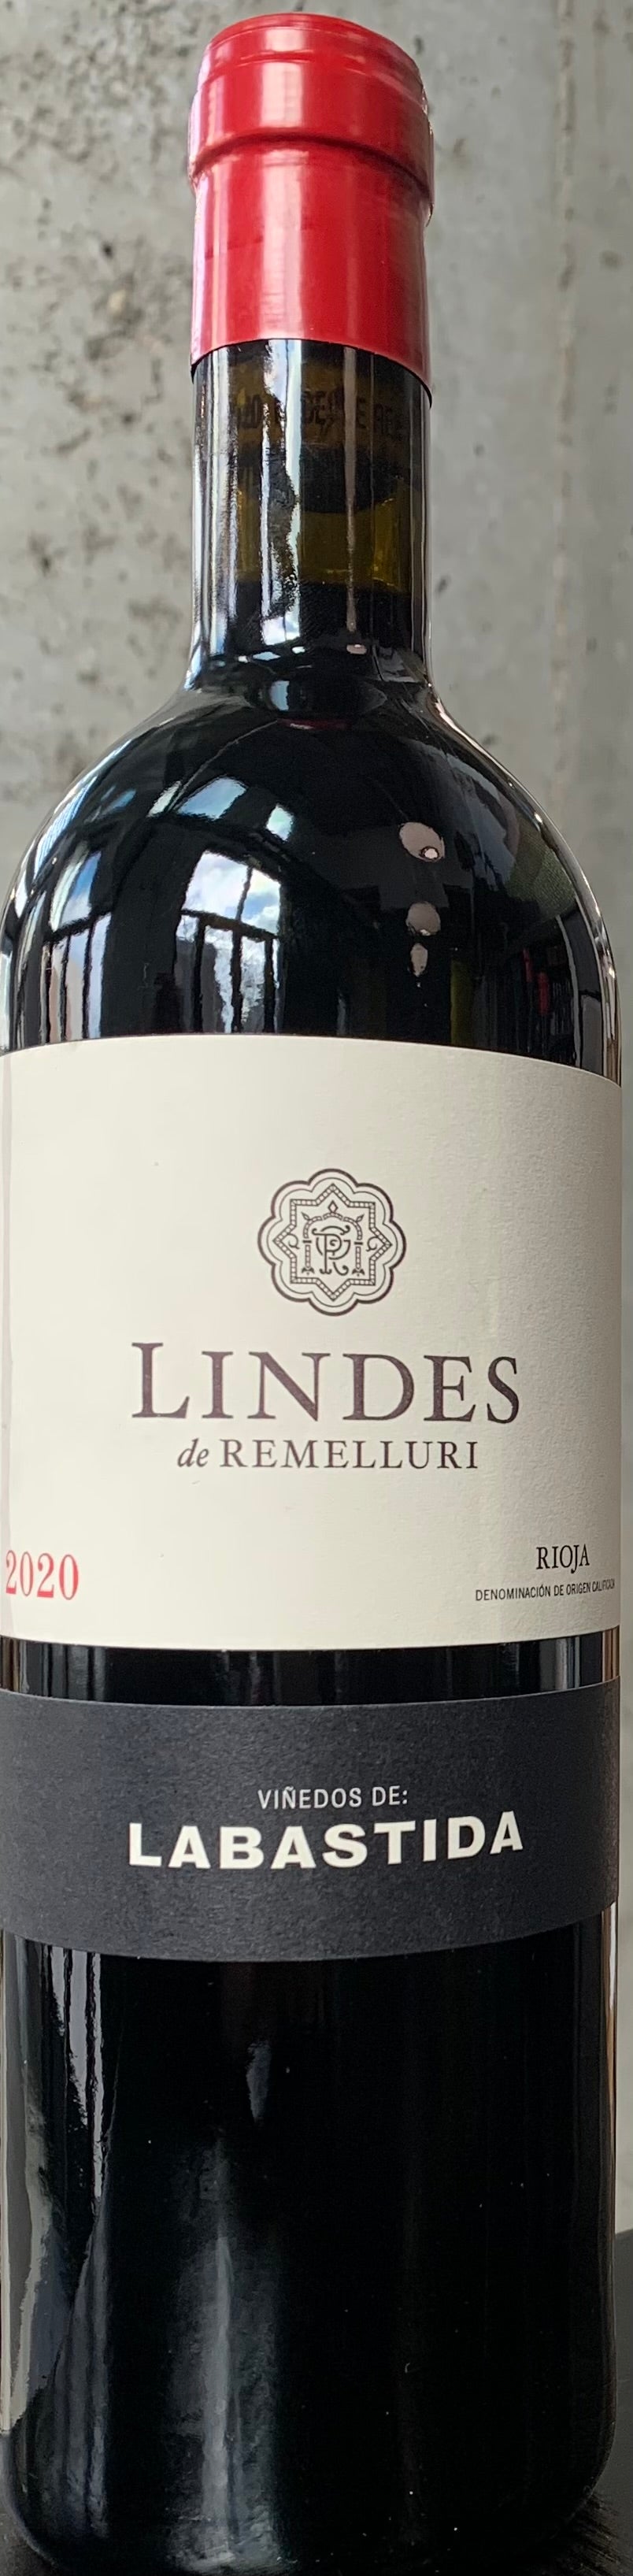 Lindes de Remelluri "Viñedos de Labastida" Rioja '20